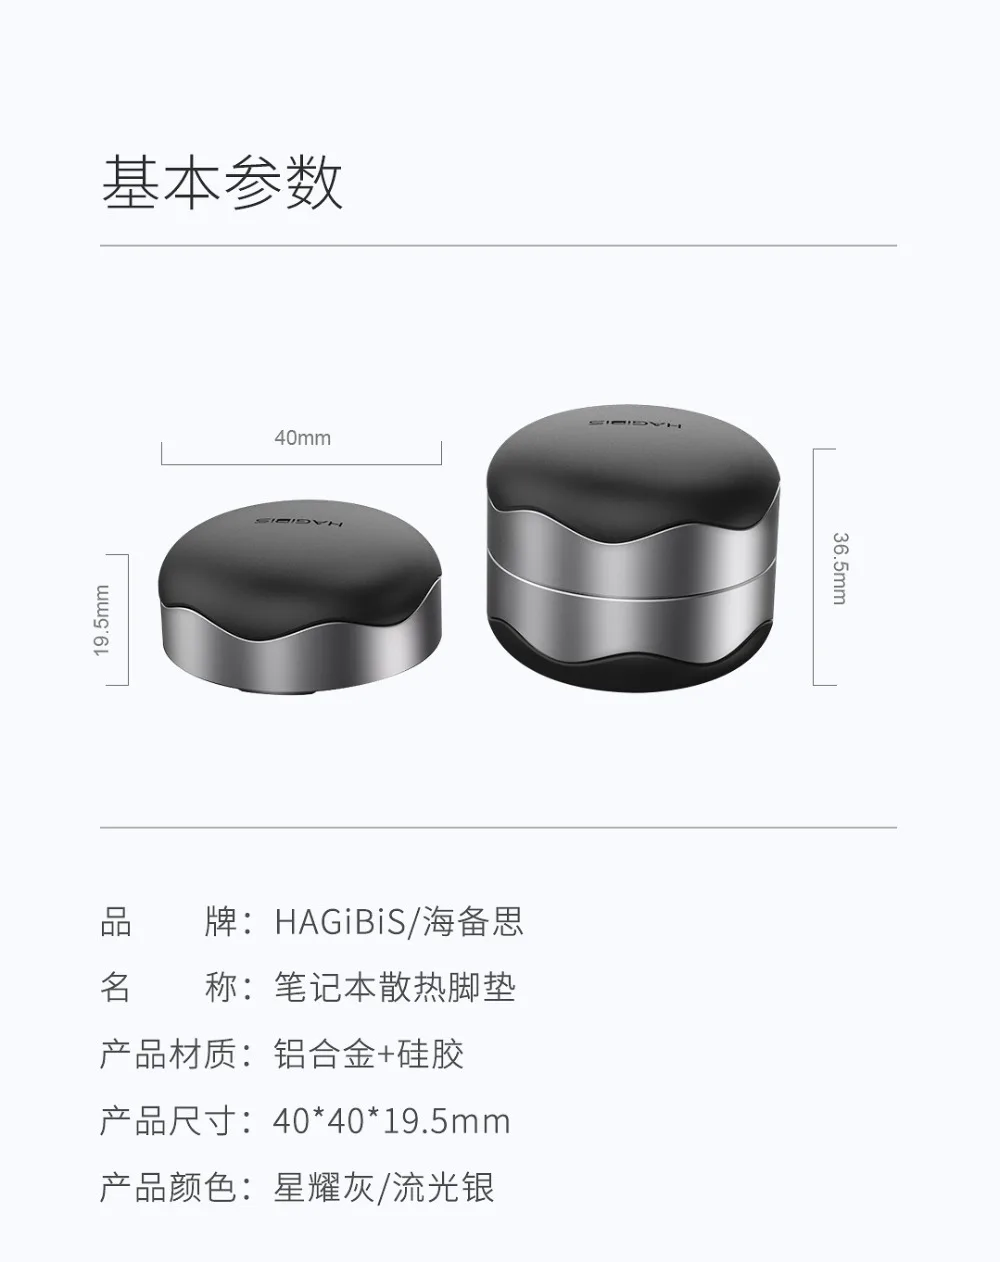 Xiaomi Mijia Hagibis охлаждающая подставка под ноутбук магнит Адсорбция физическое охлаждение стабильная противоскользящая Серебристая/серая